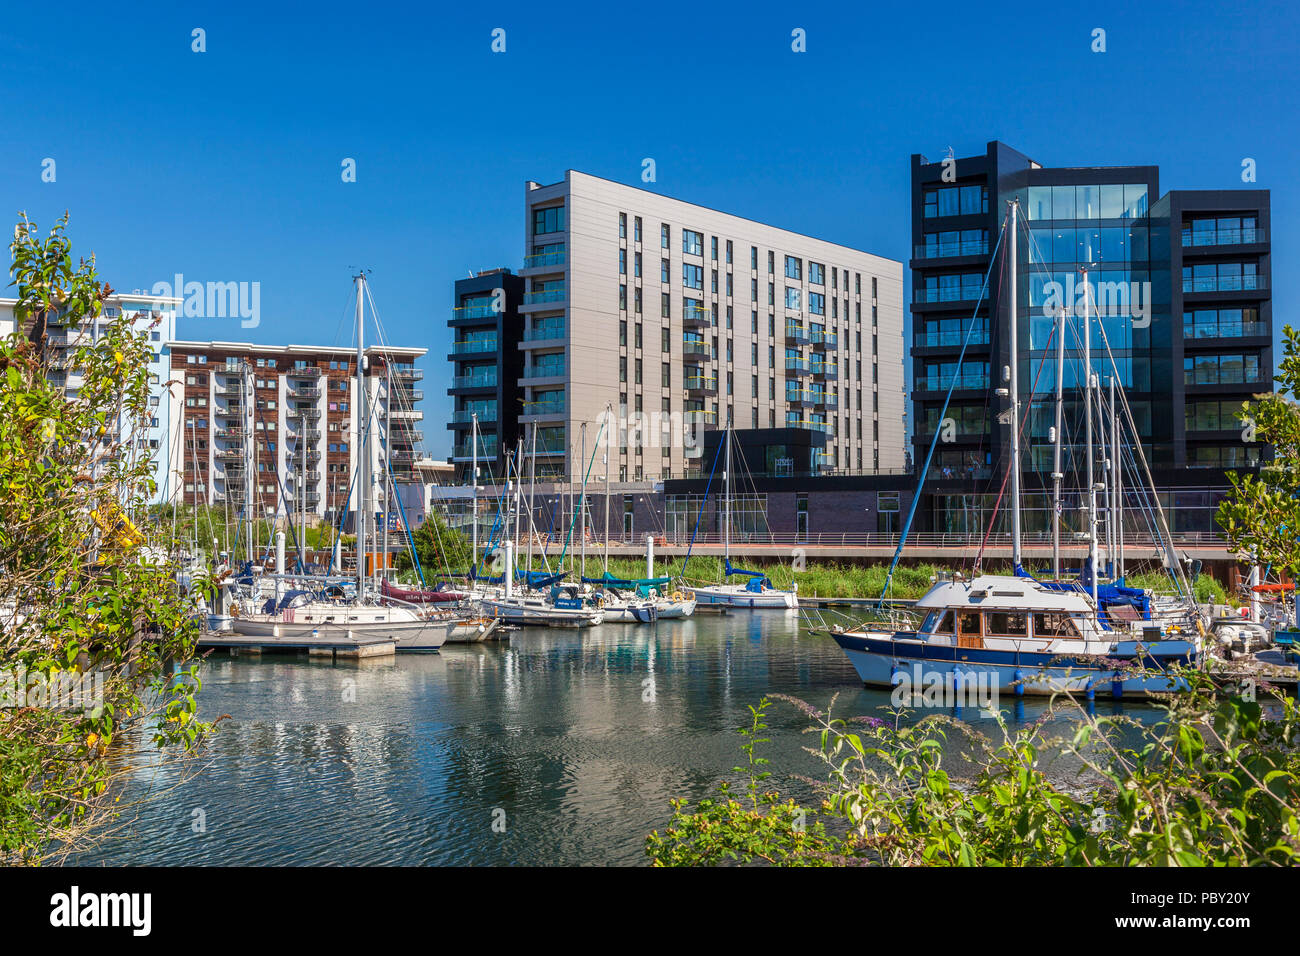 Appartements modernes, la baie de Cardiff, Pays de Galles, Royaume-Uni Banque D'Images